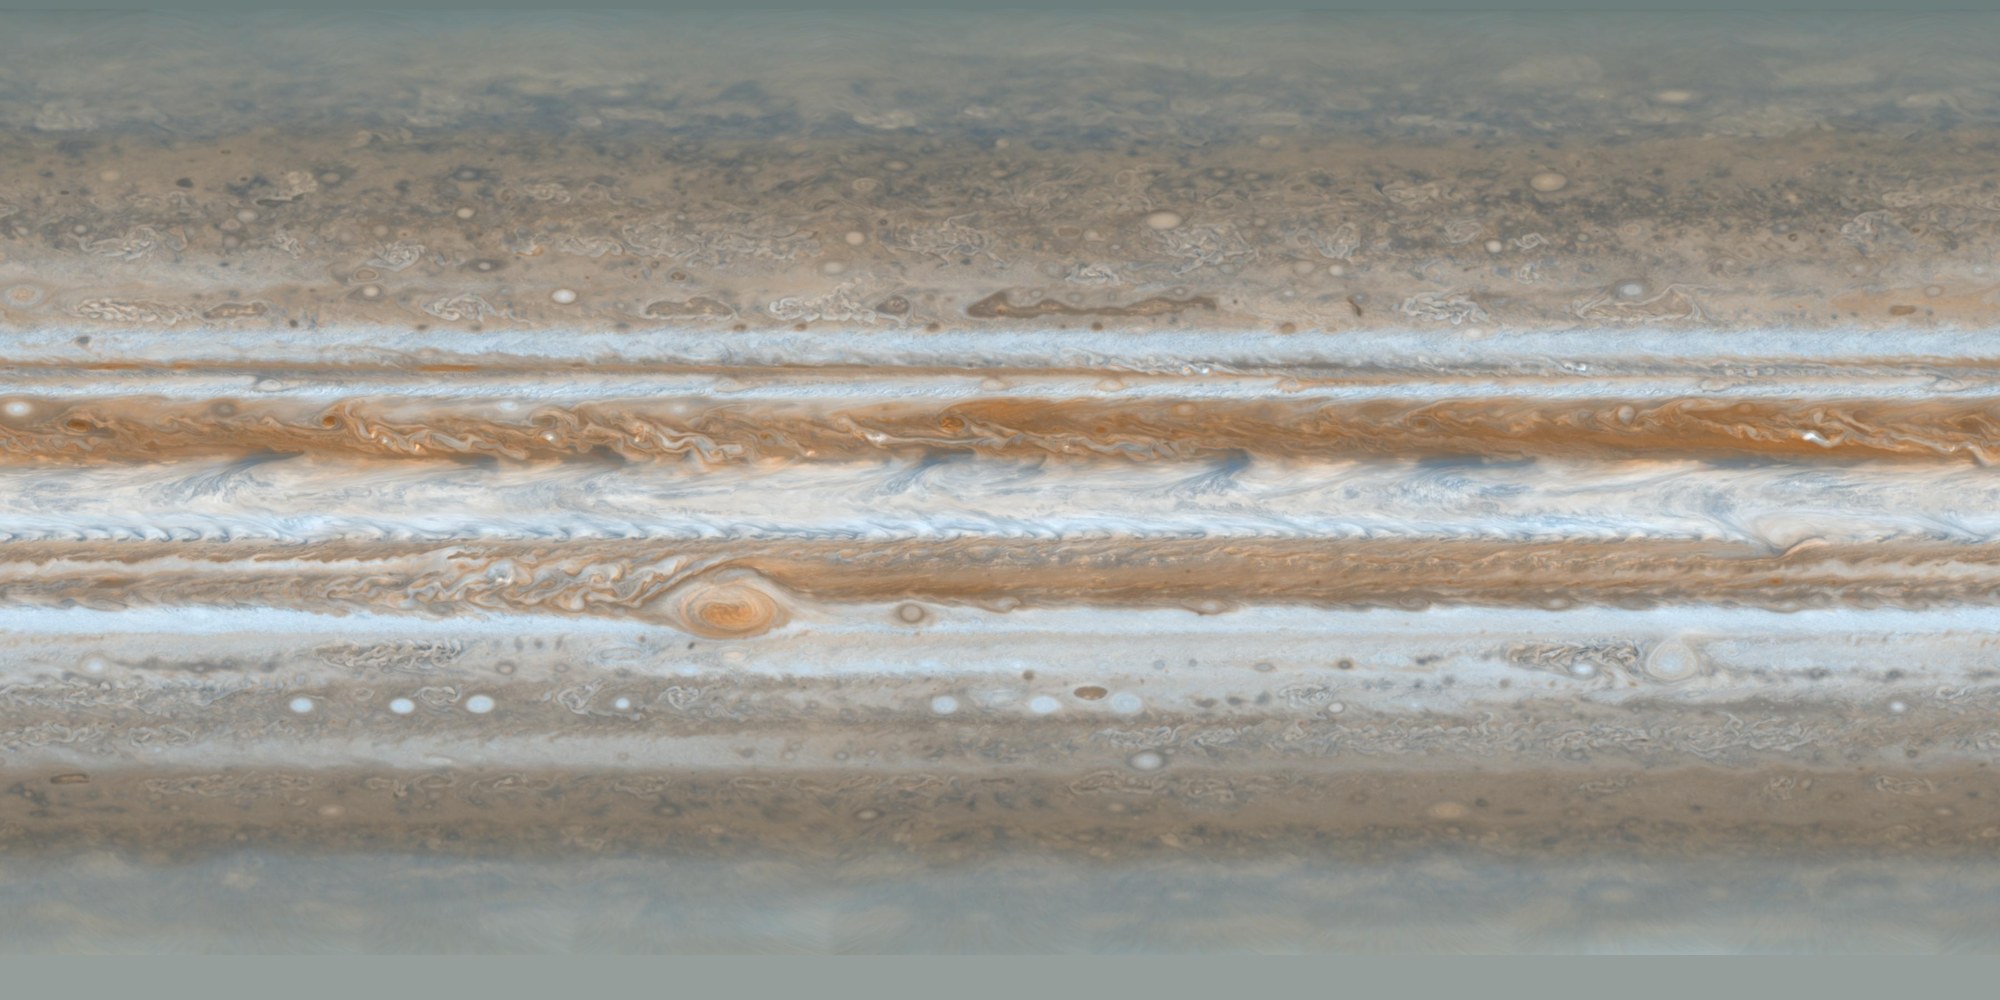 Jupiter's South Pole